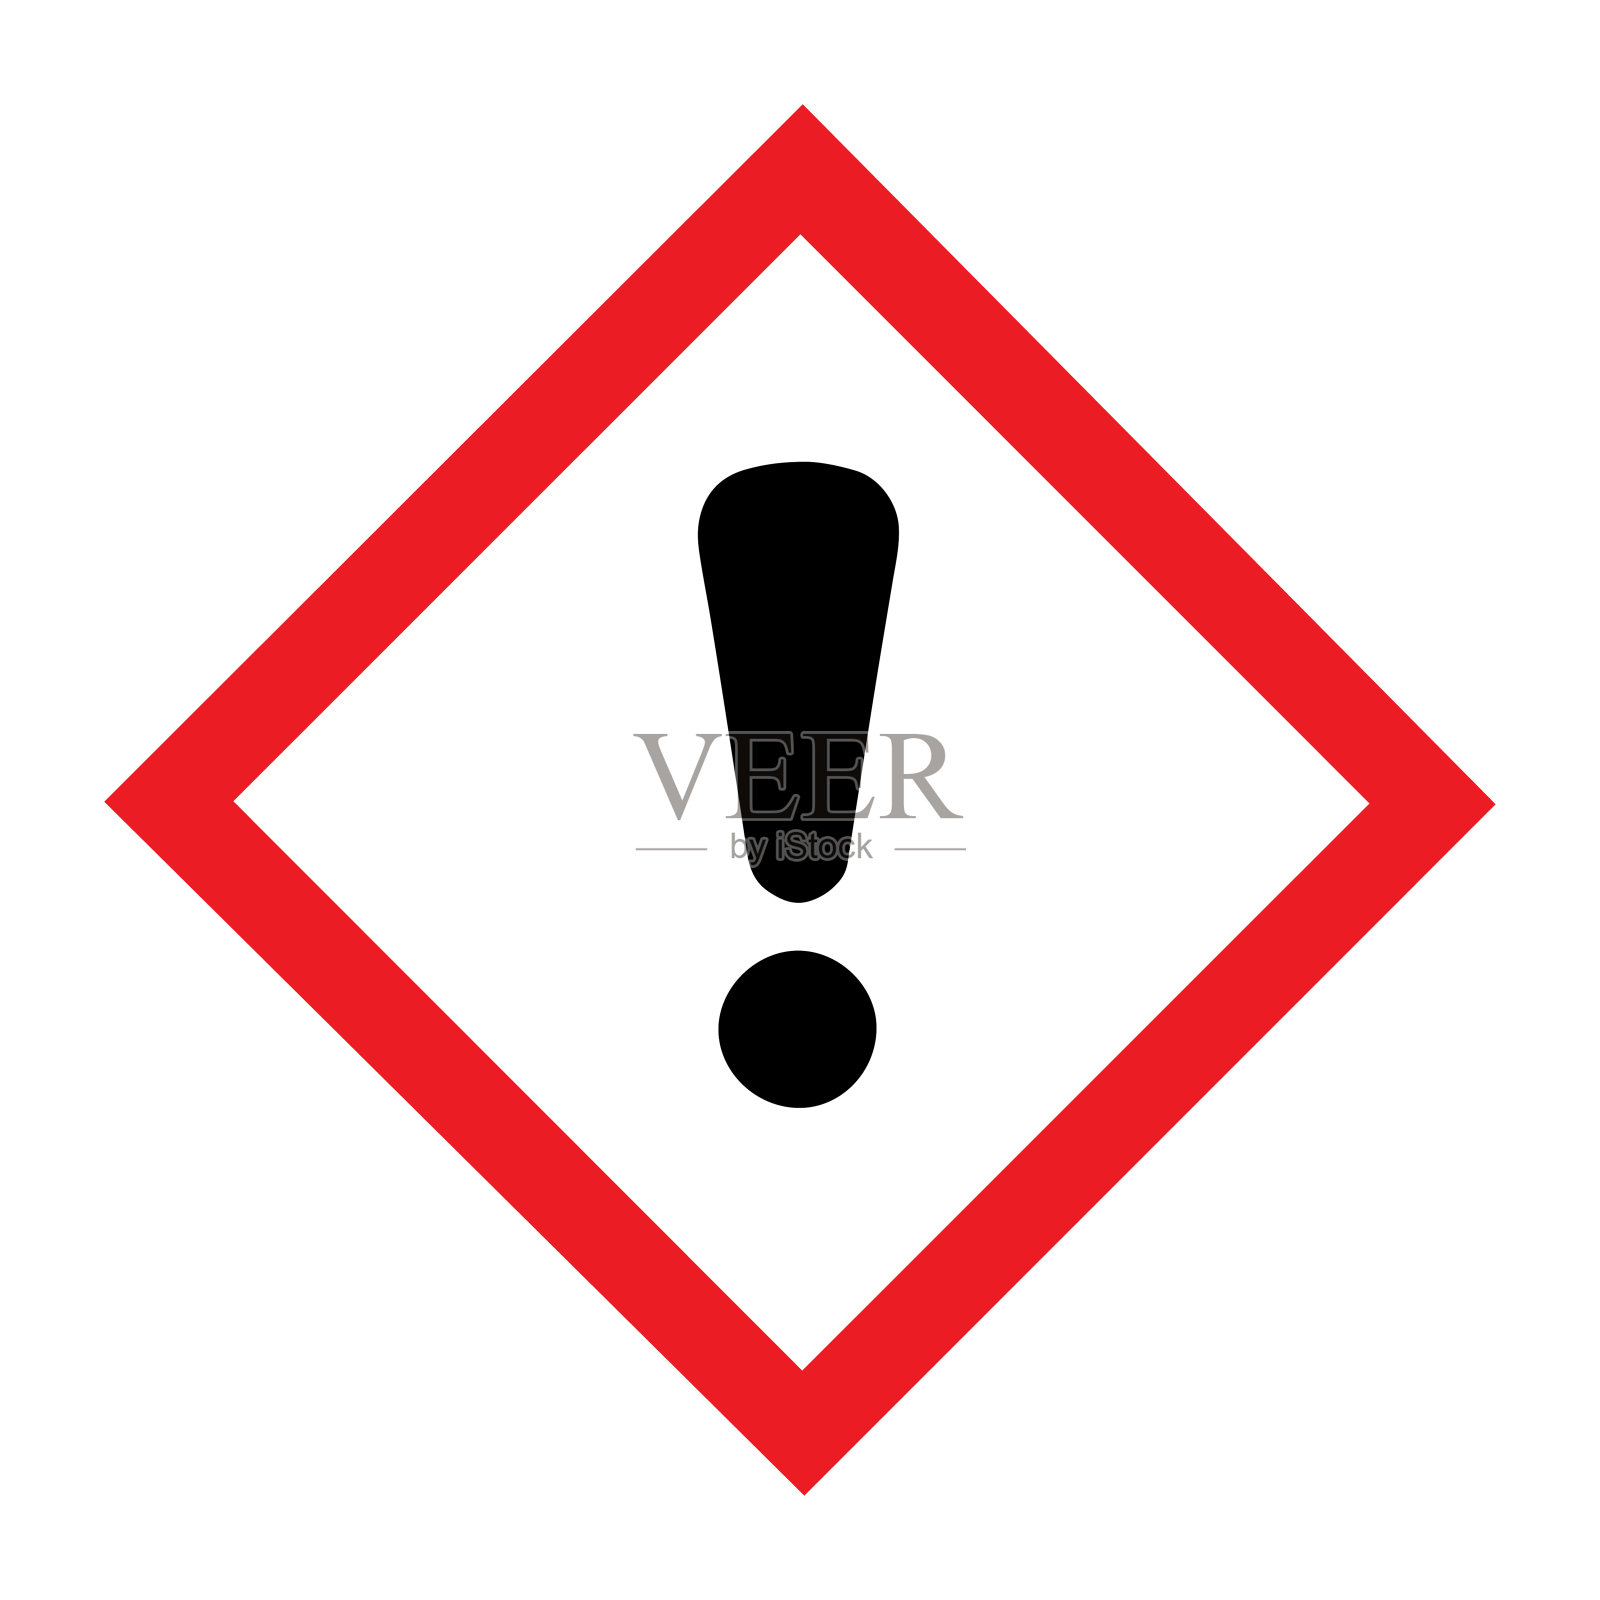 全球协调系统(GHS)有害标志、警告标志标准象形图设计元素图片